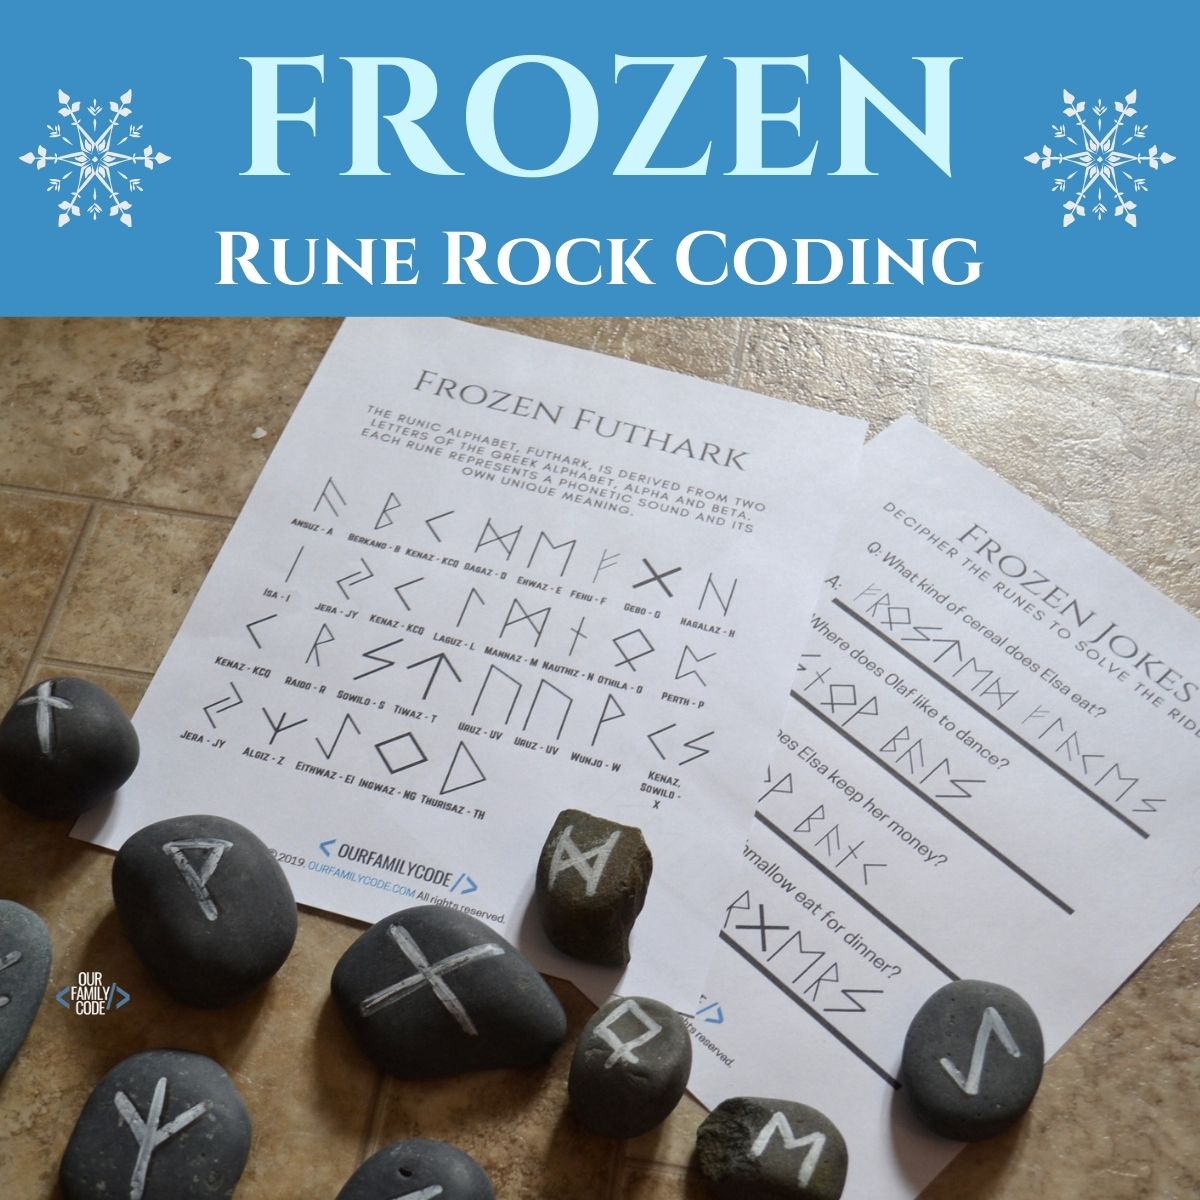 FI Frozen coding Rune Rocks frozen steam